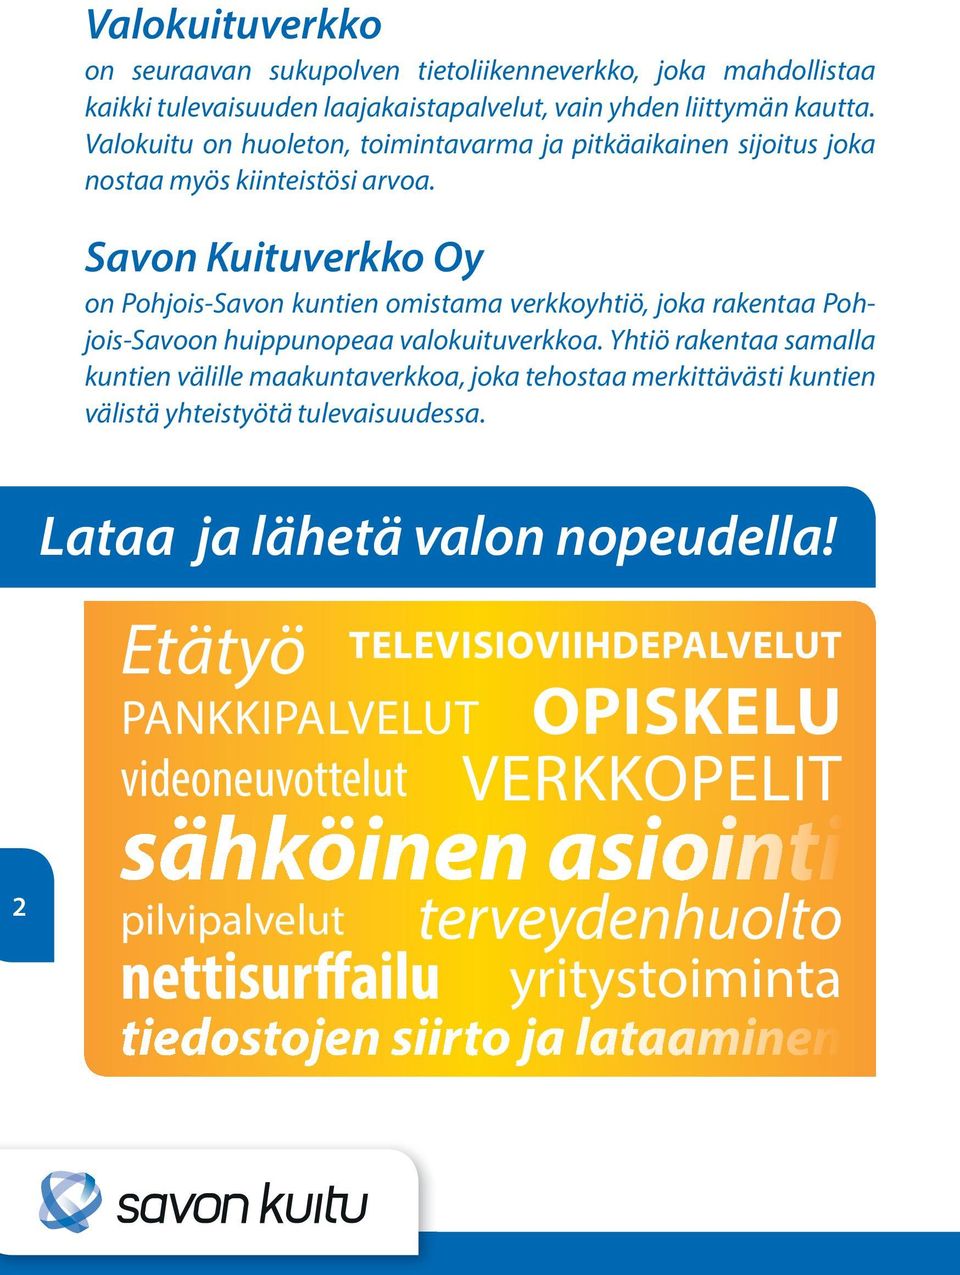 Savon Kuituverkko Oy on Pohjois-Savon kuntien omistama verkkoyhtiö, joka rakentaa Pohjois-Savoon huippunopeaa valokuituverkkoa.